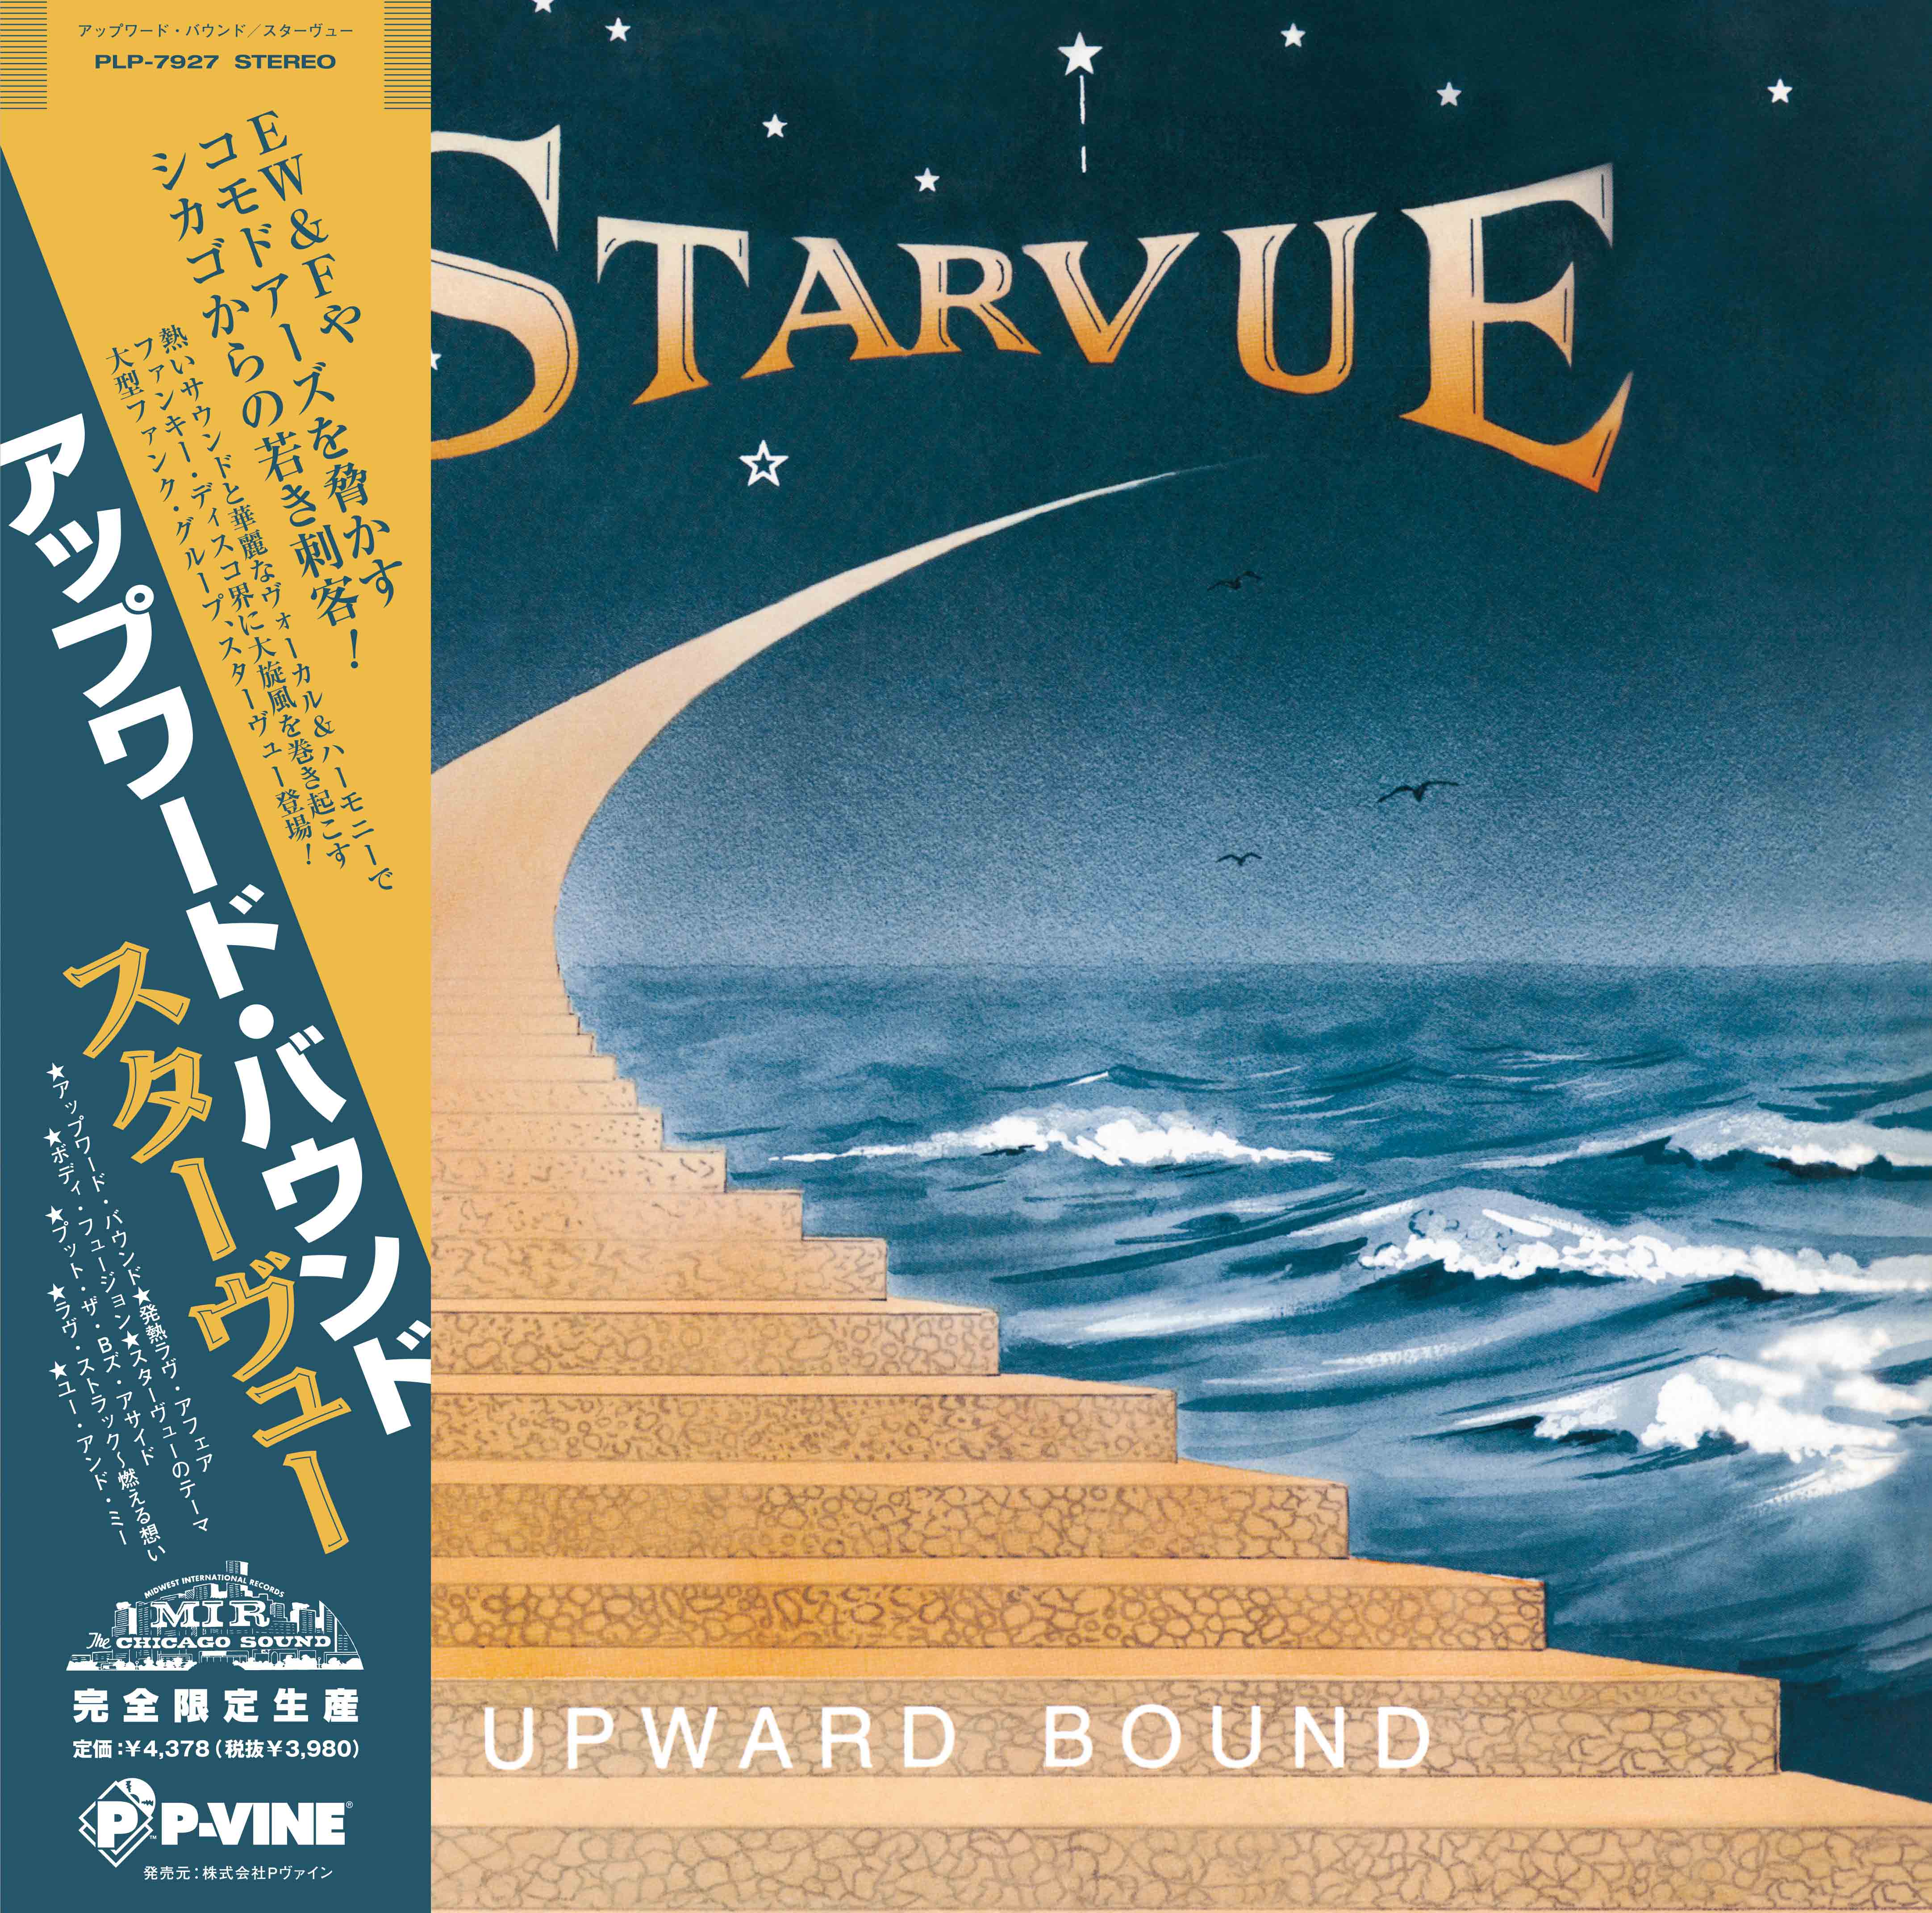 STARVUE「Upward Bound」